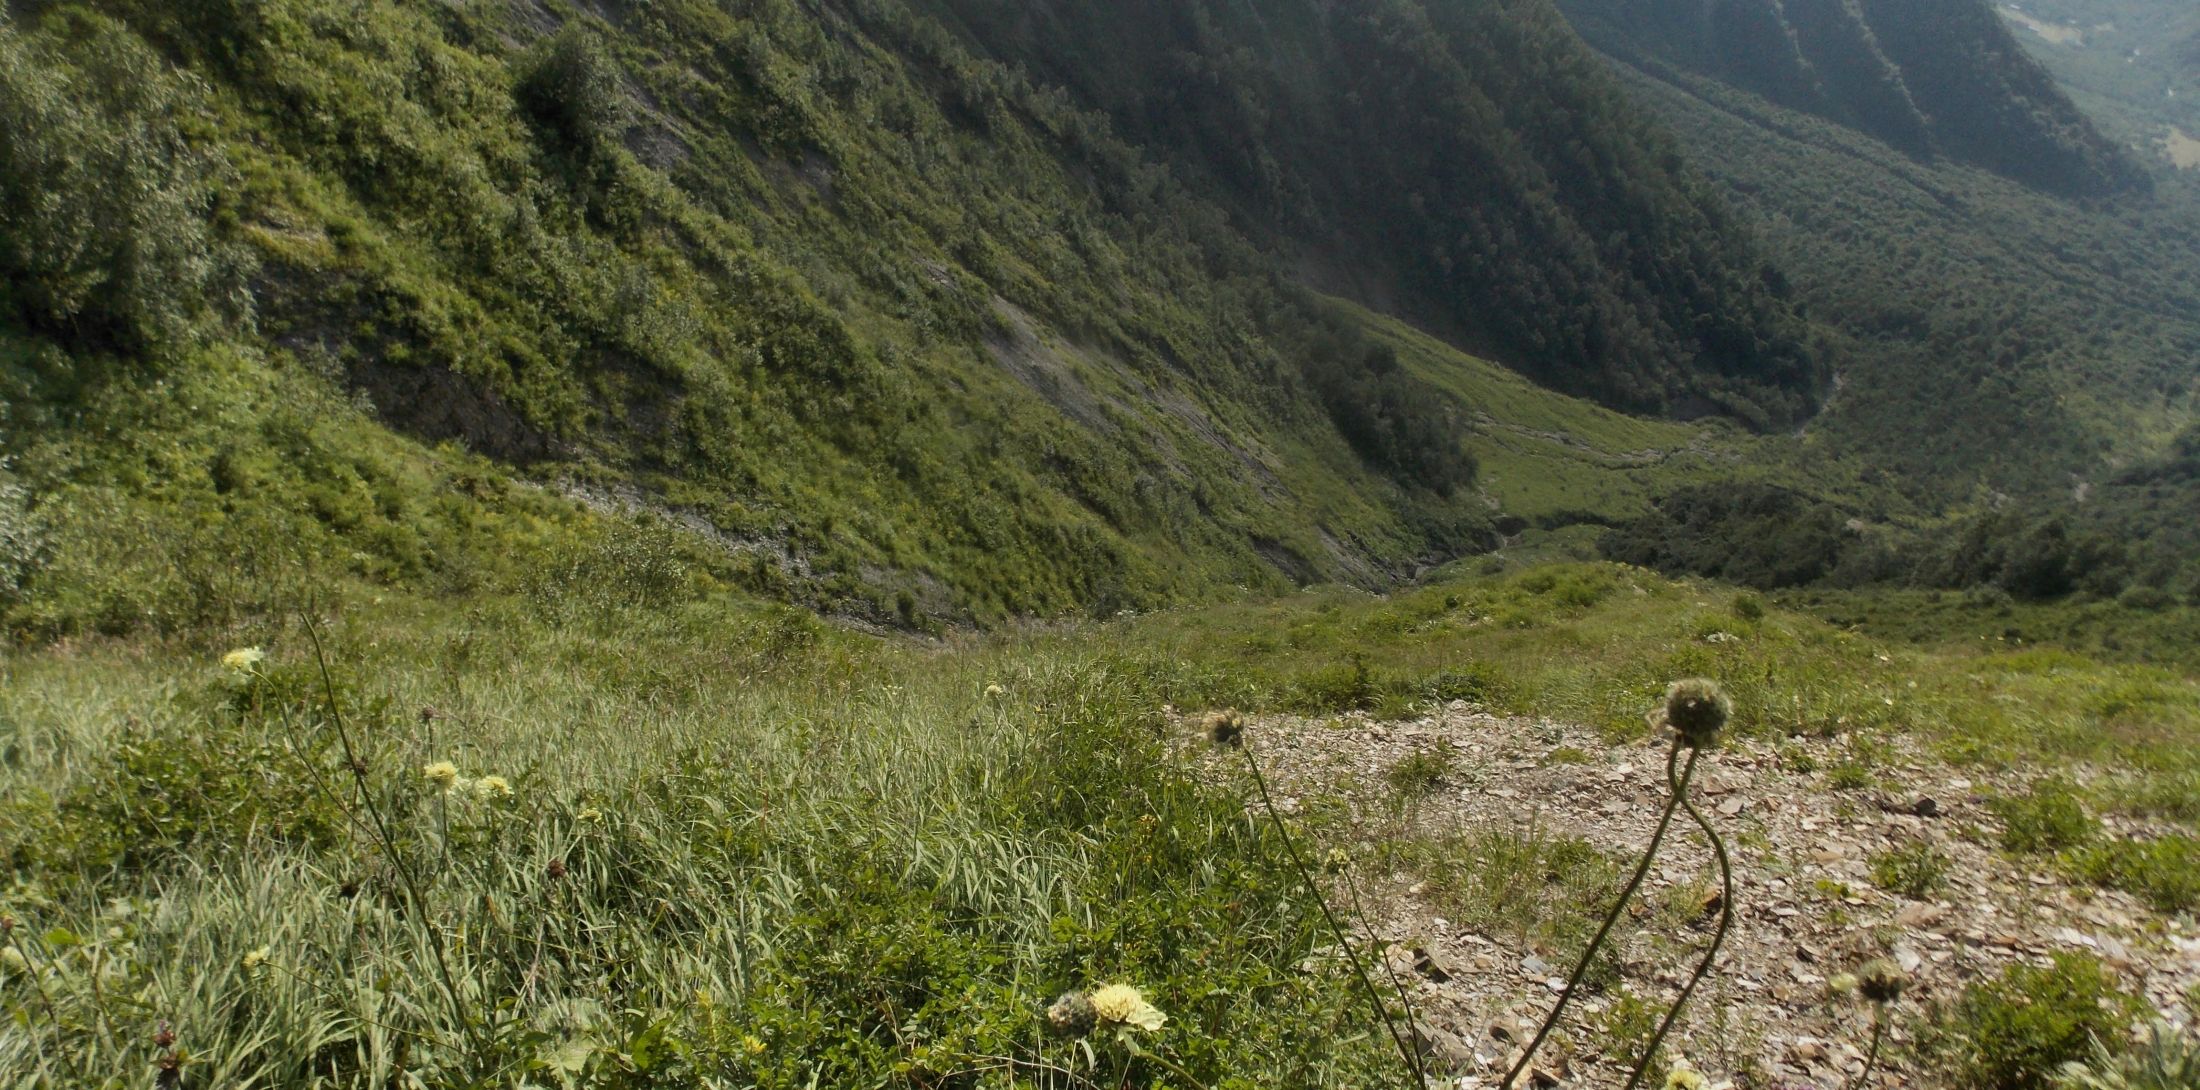 Descent into Tskhenistskali valley